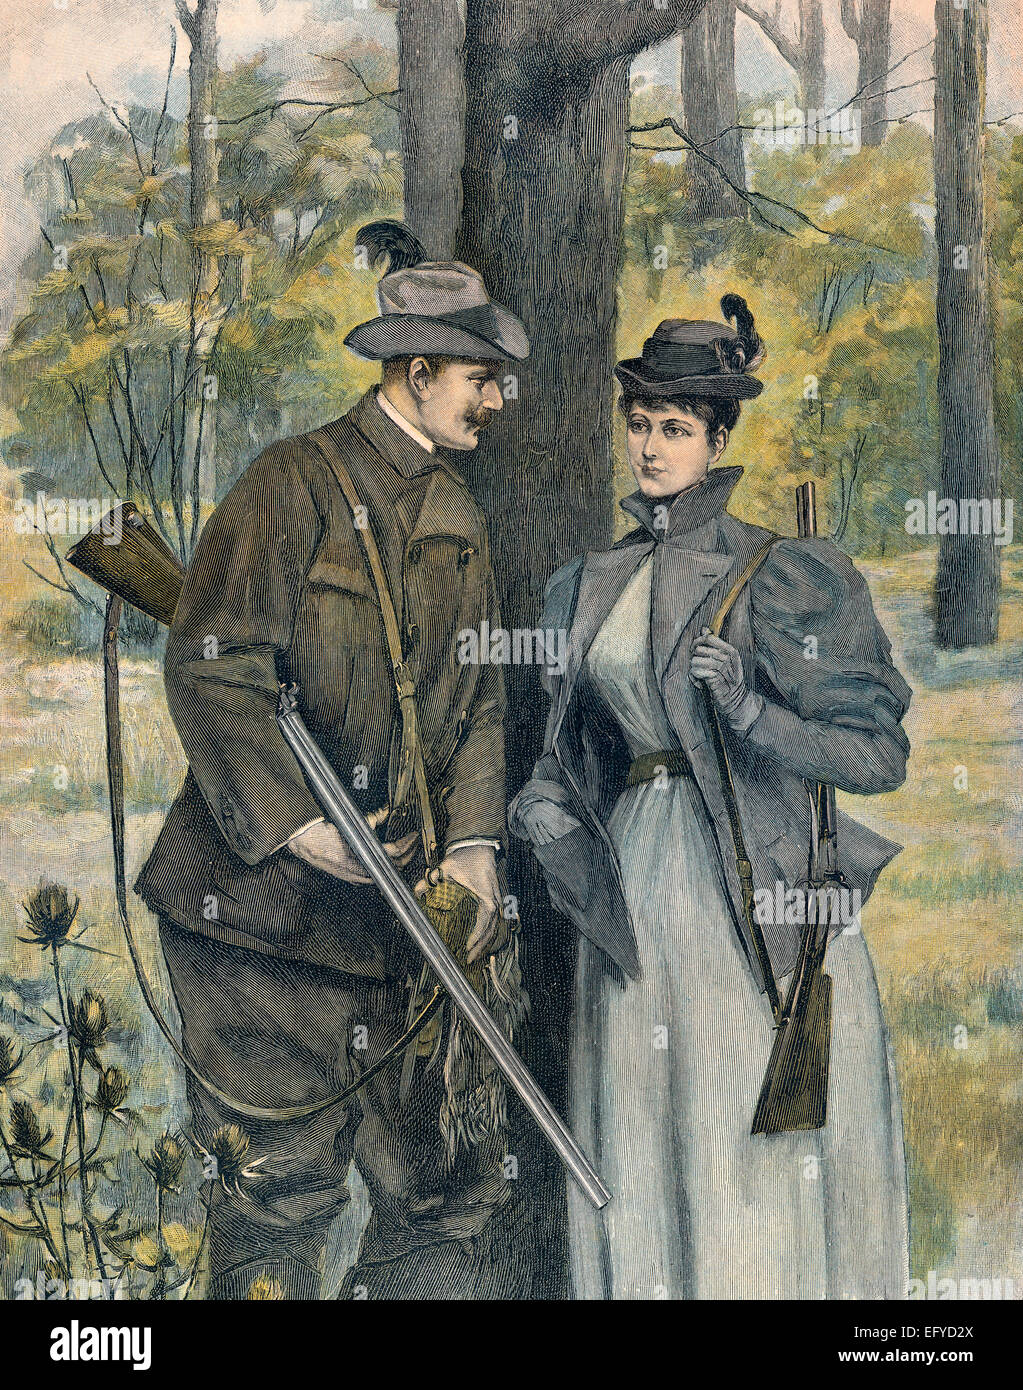 Un homme et une femme en tant que chasseurs avec armes à feu, Banque D'Images